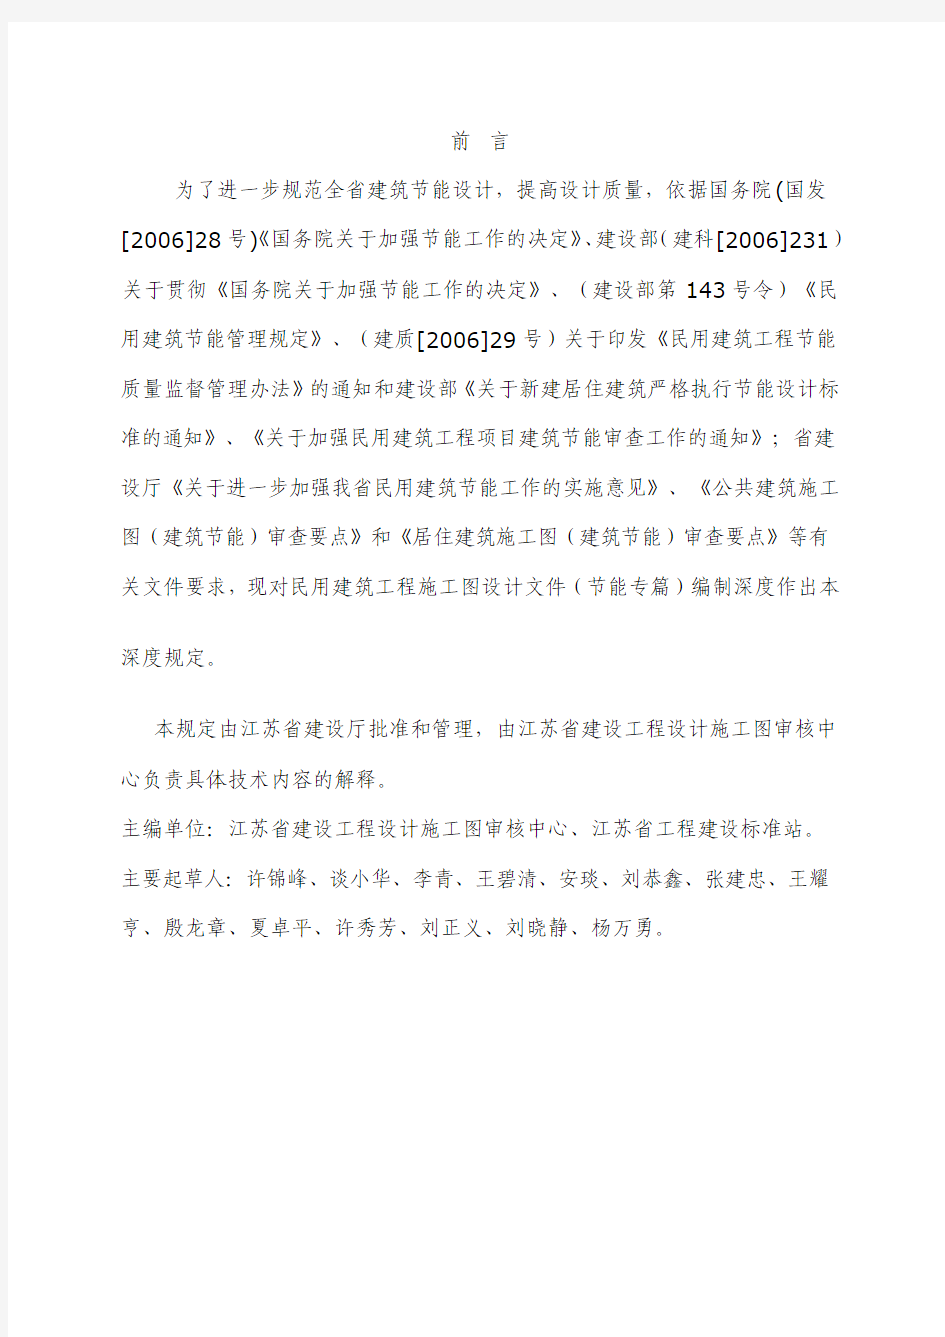 《江苏省民用建筑工程施工图设计文件(节能专篇)编制深度规定》(2008年版)